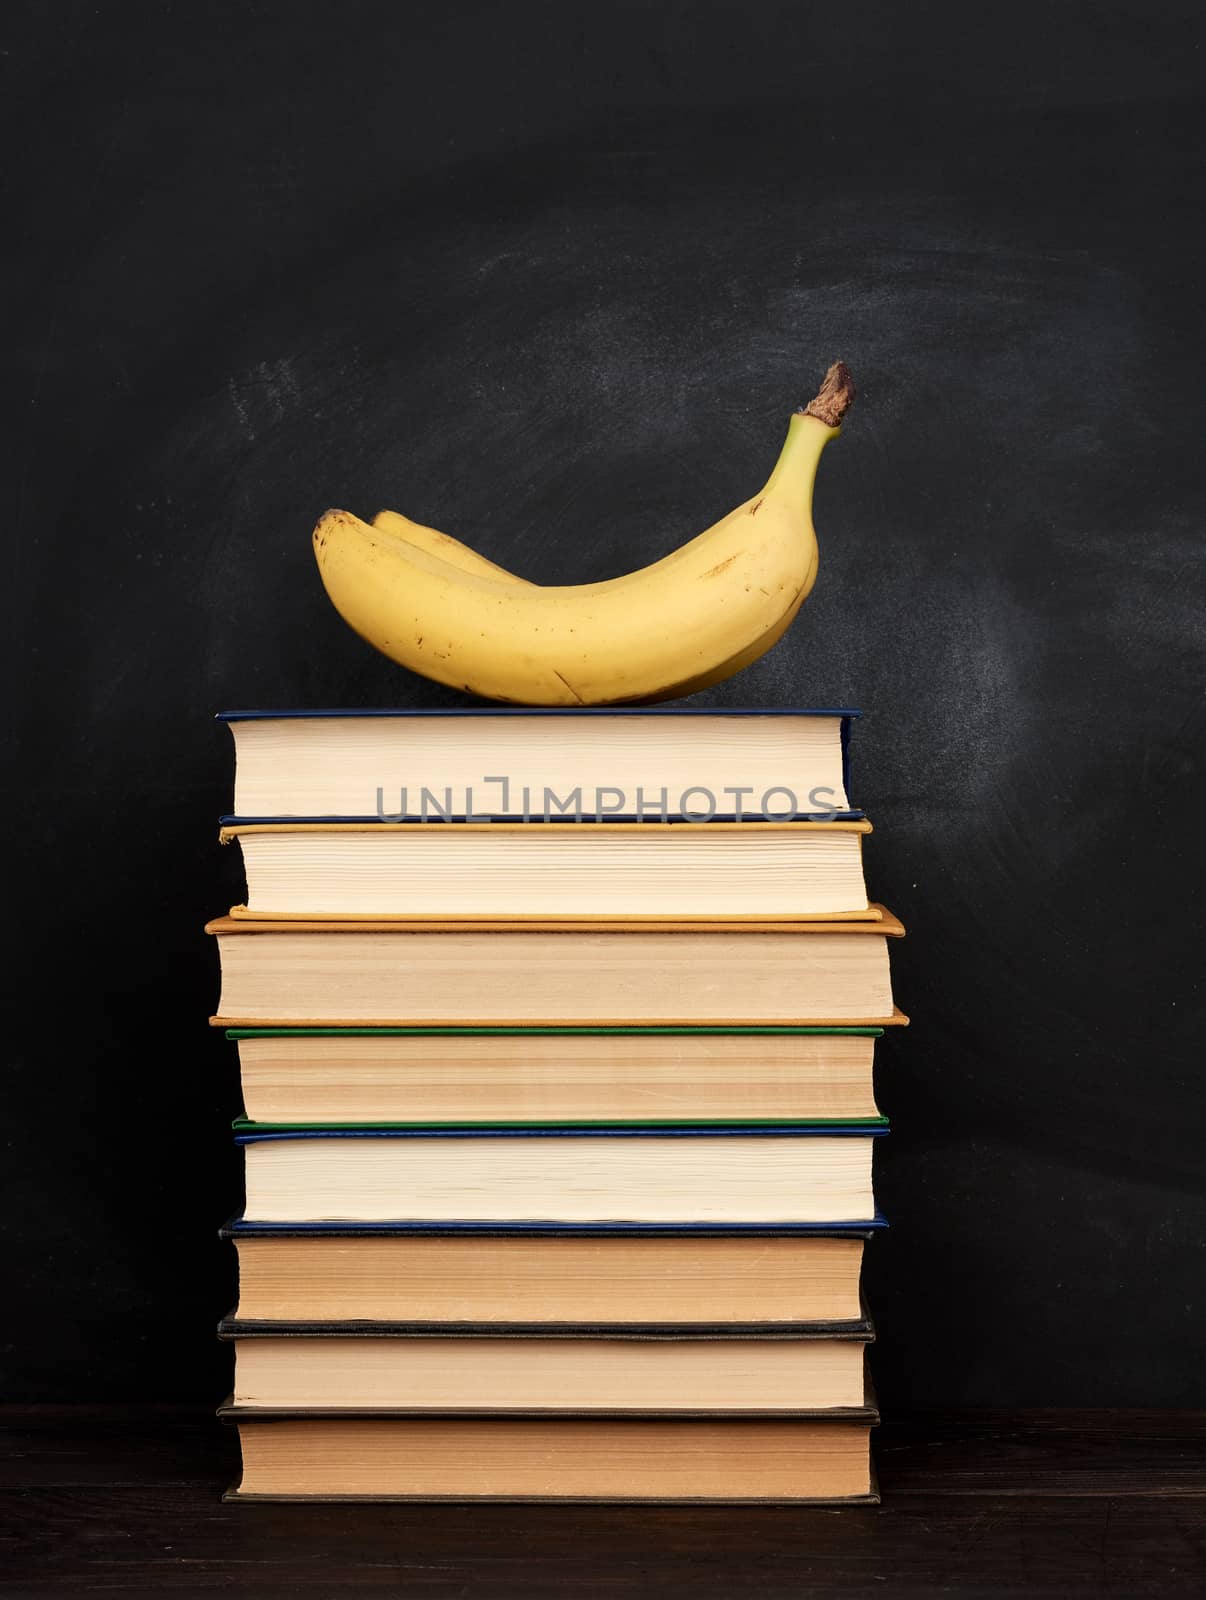 yellow ripe banana and stack of various hardback books by ndanko